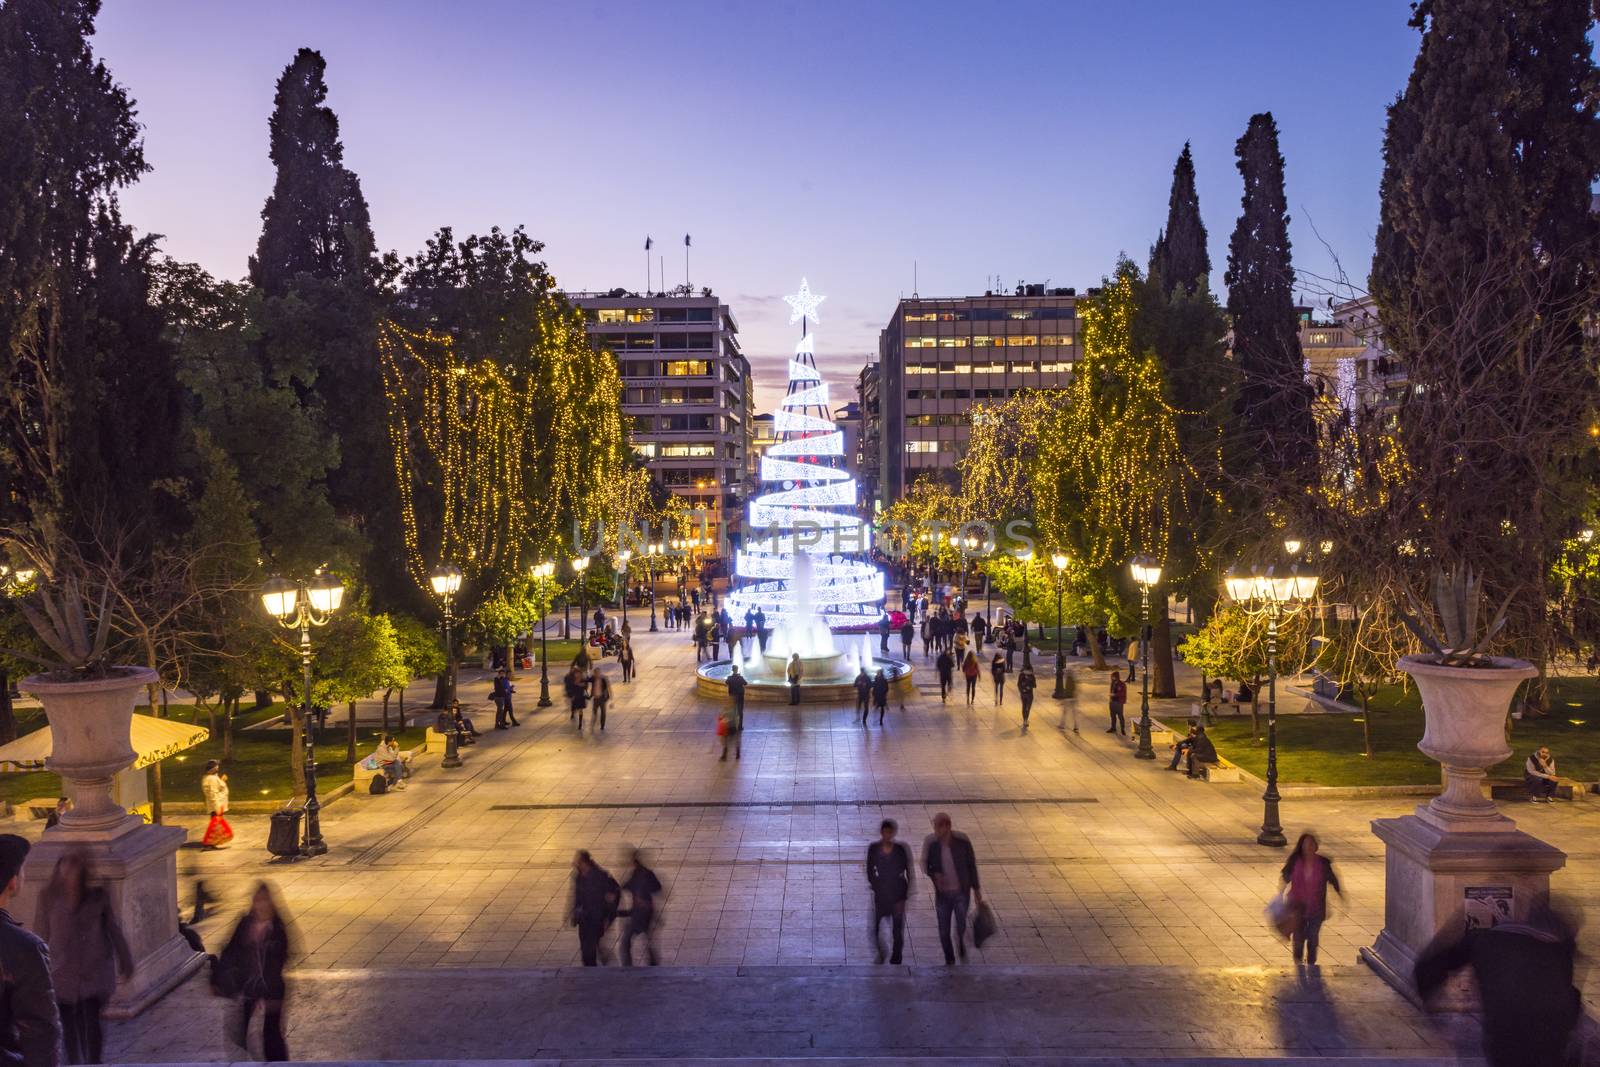 syntagma square with christmas tree_christmas 2017